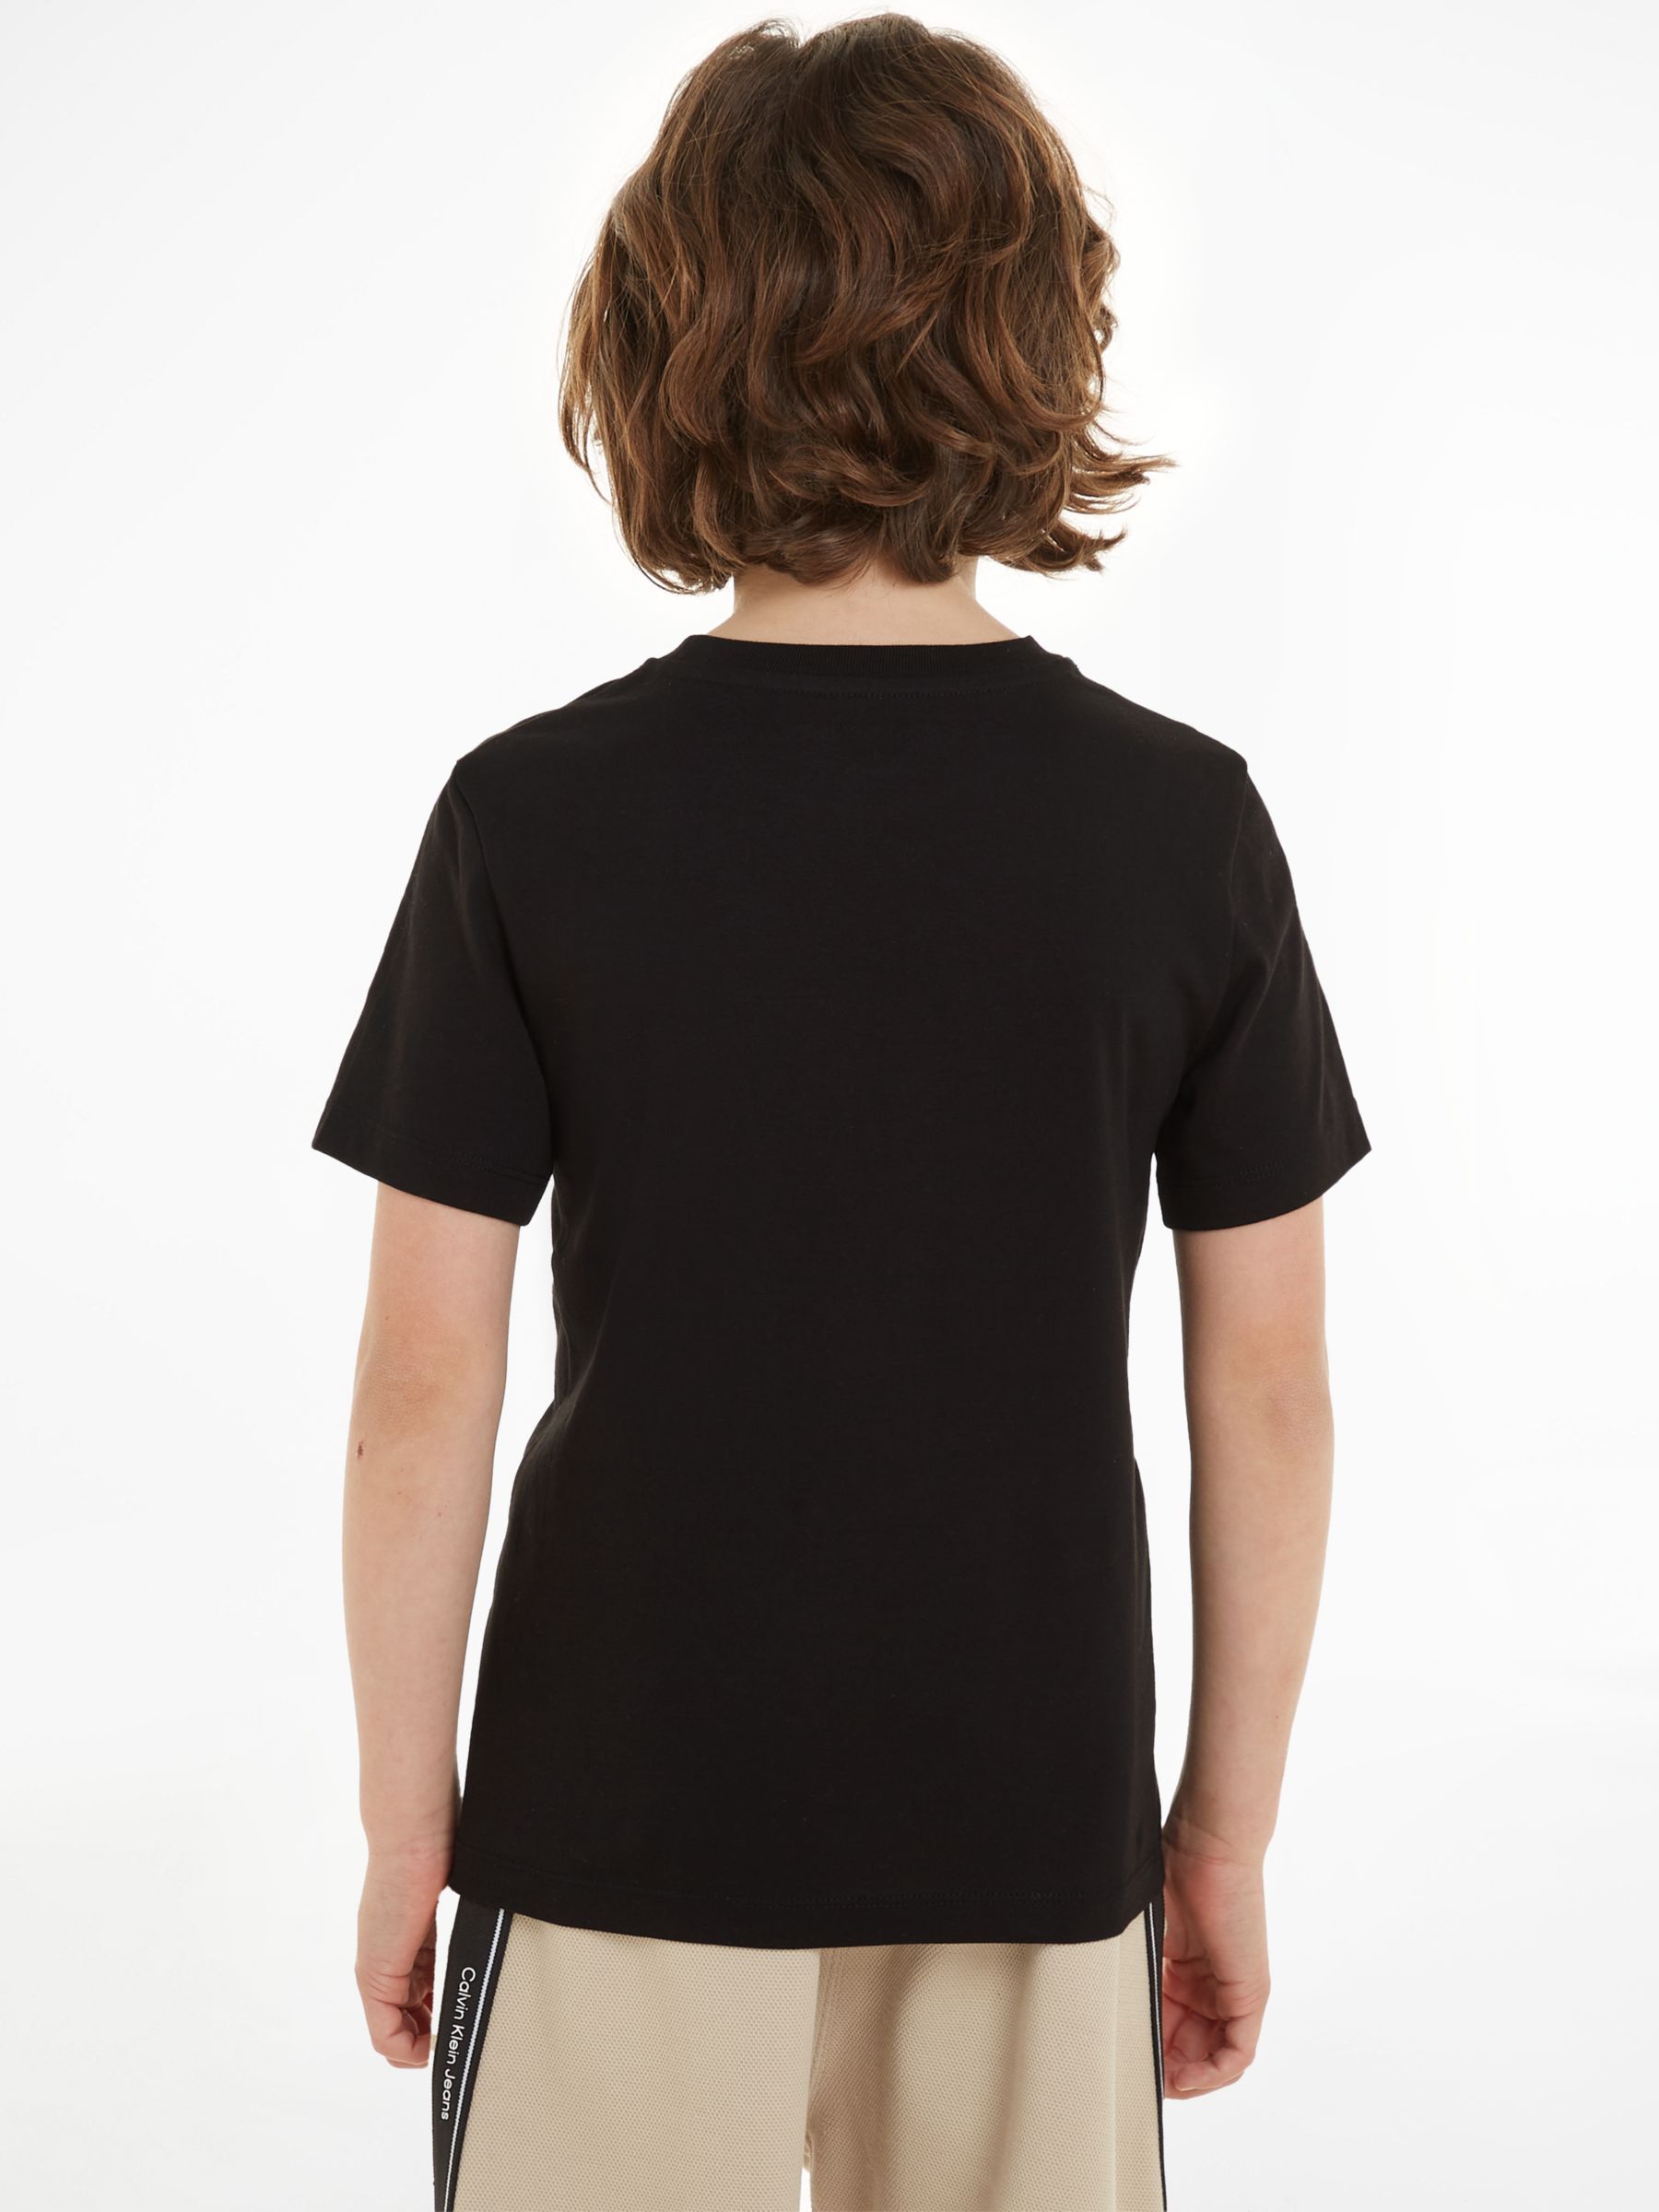 Klein John Blue/Ck Monogram Black & Keepsake Pack T-Shirts, Short of at 2, Calvin Sleeve Cotton Kids\' Partners Lewis